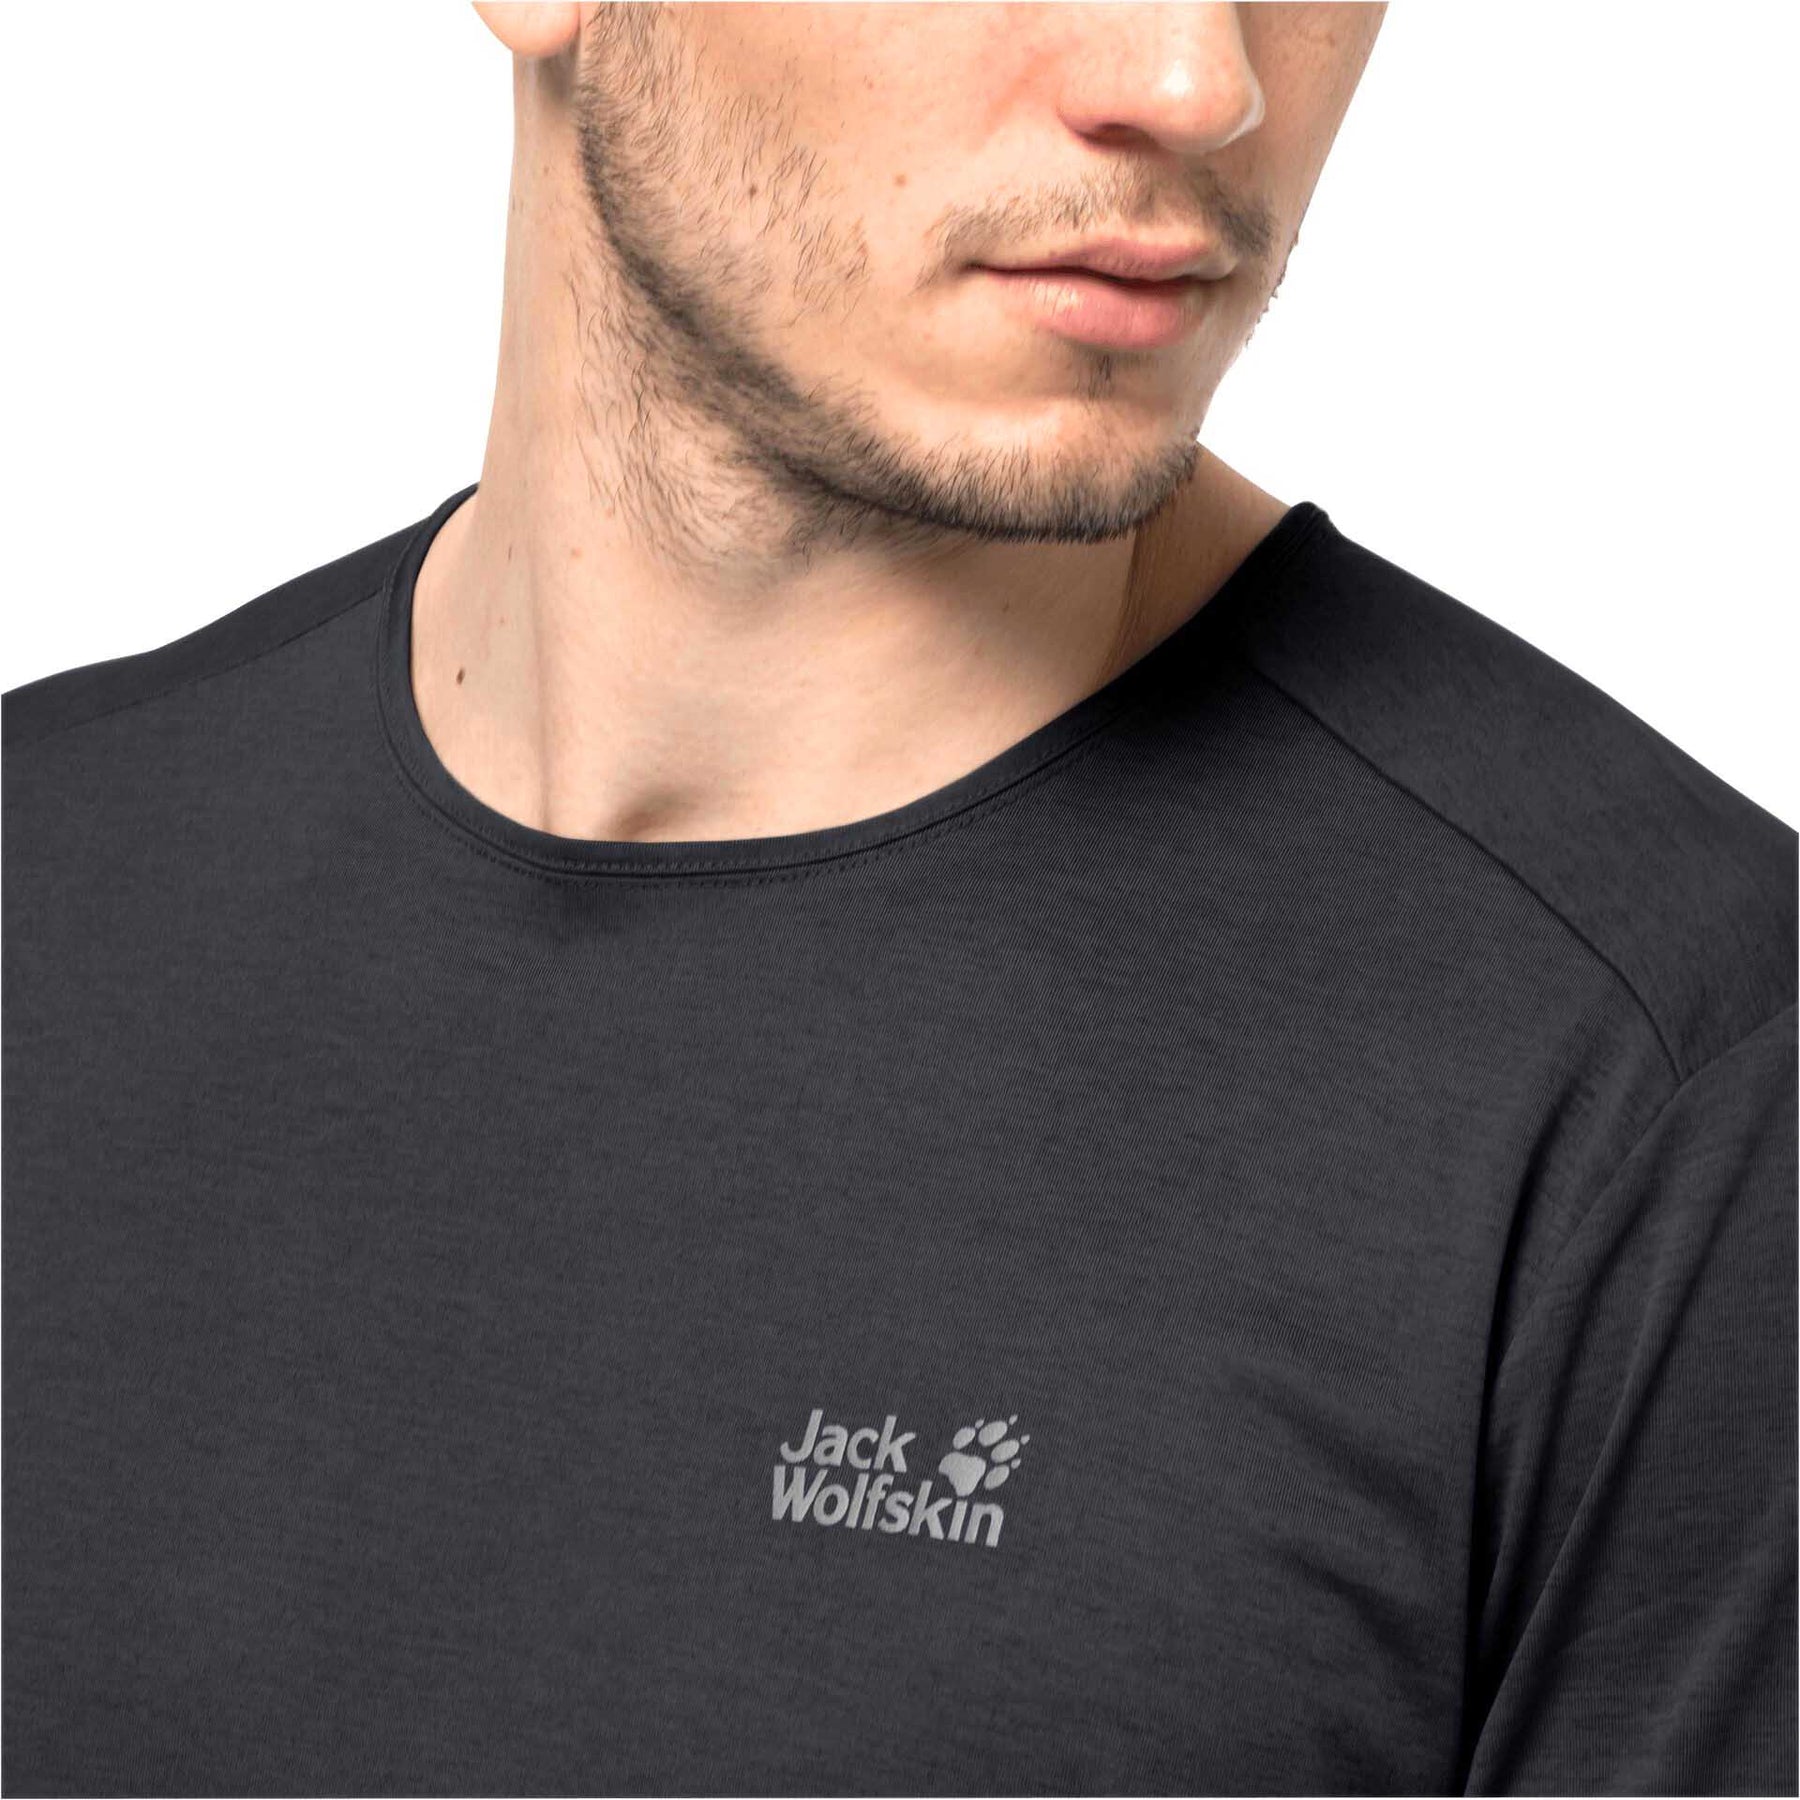 Jack Wolfskin Pack & Go Mens T-Shirt